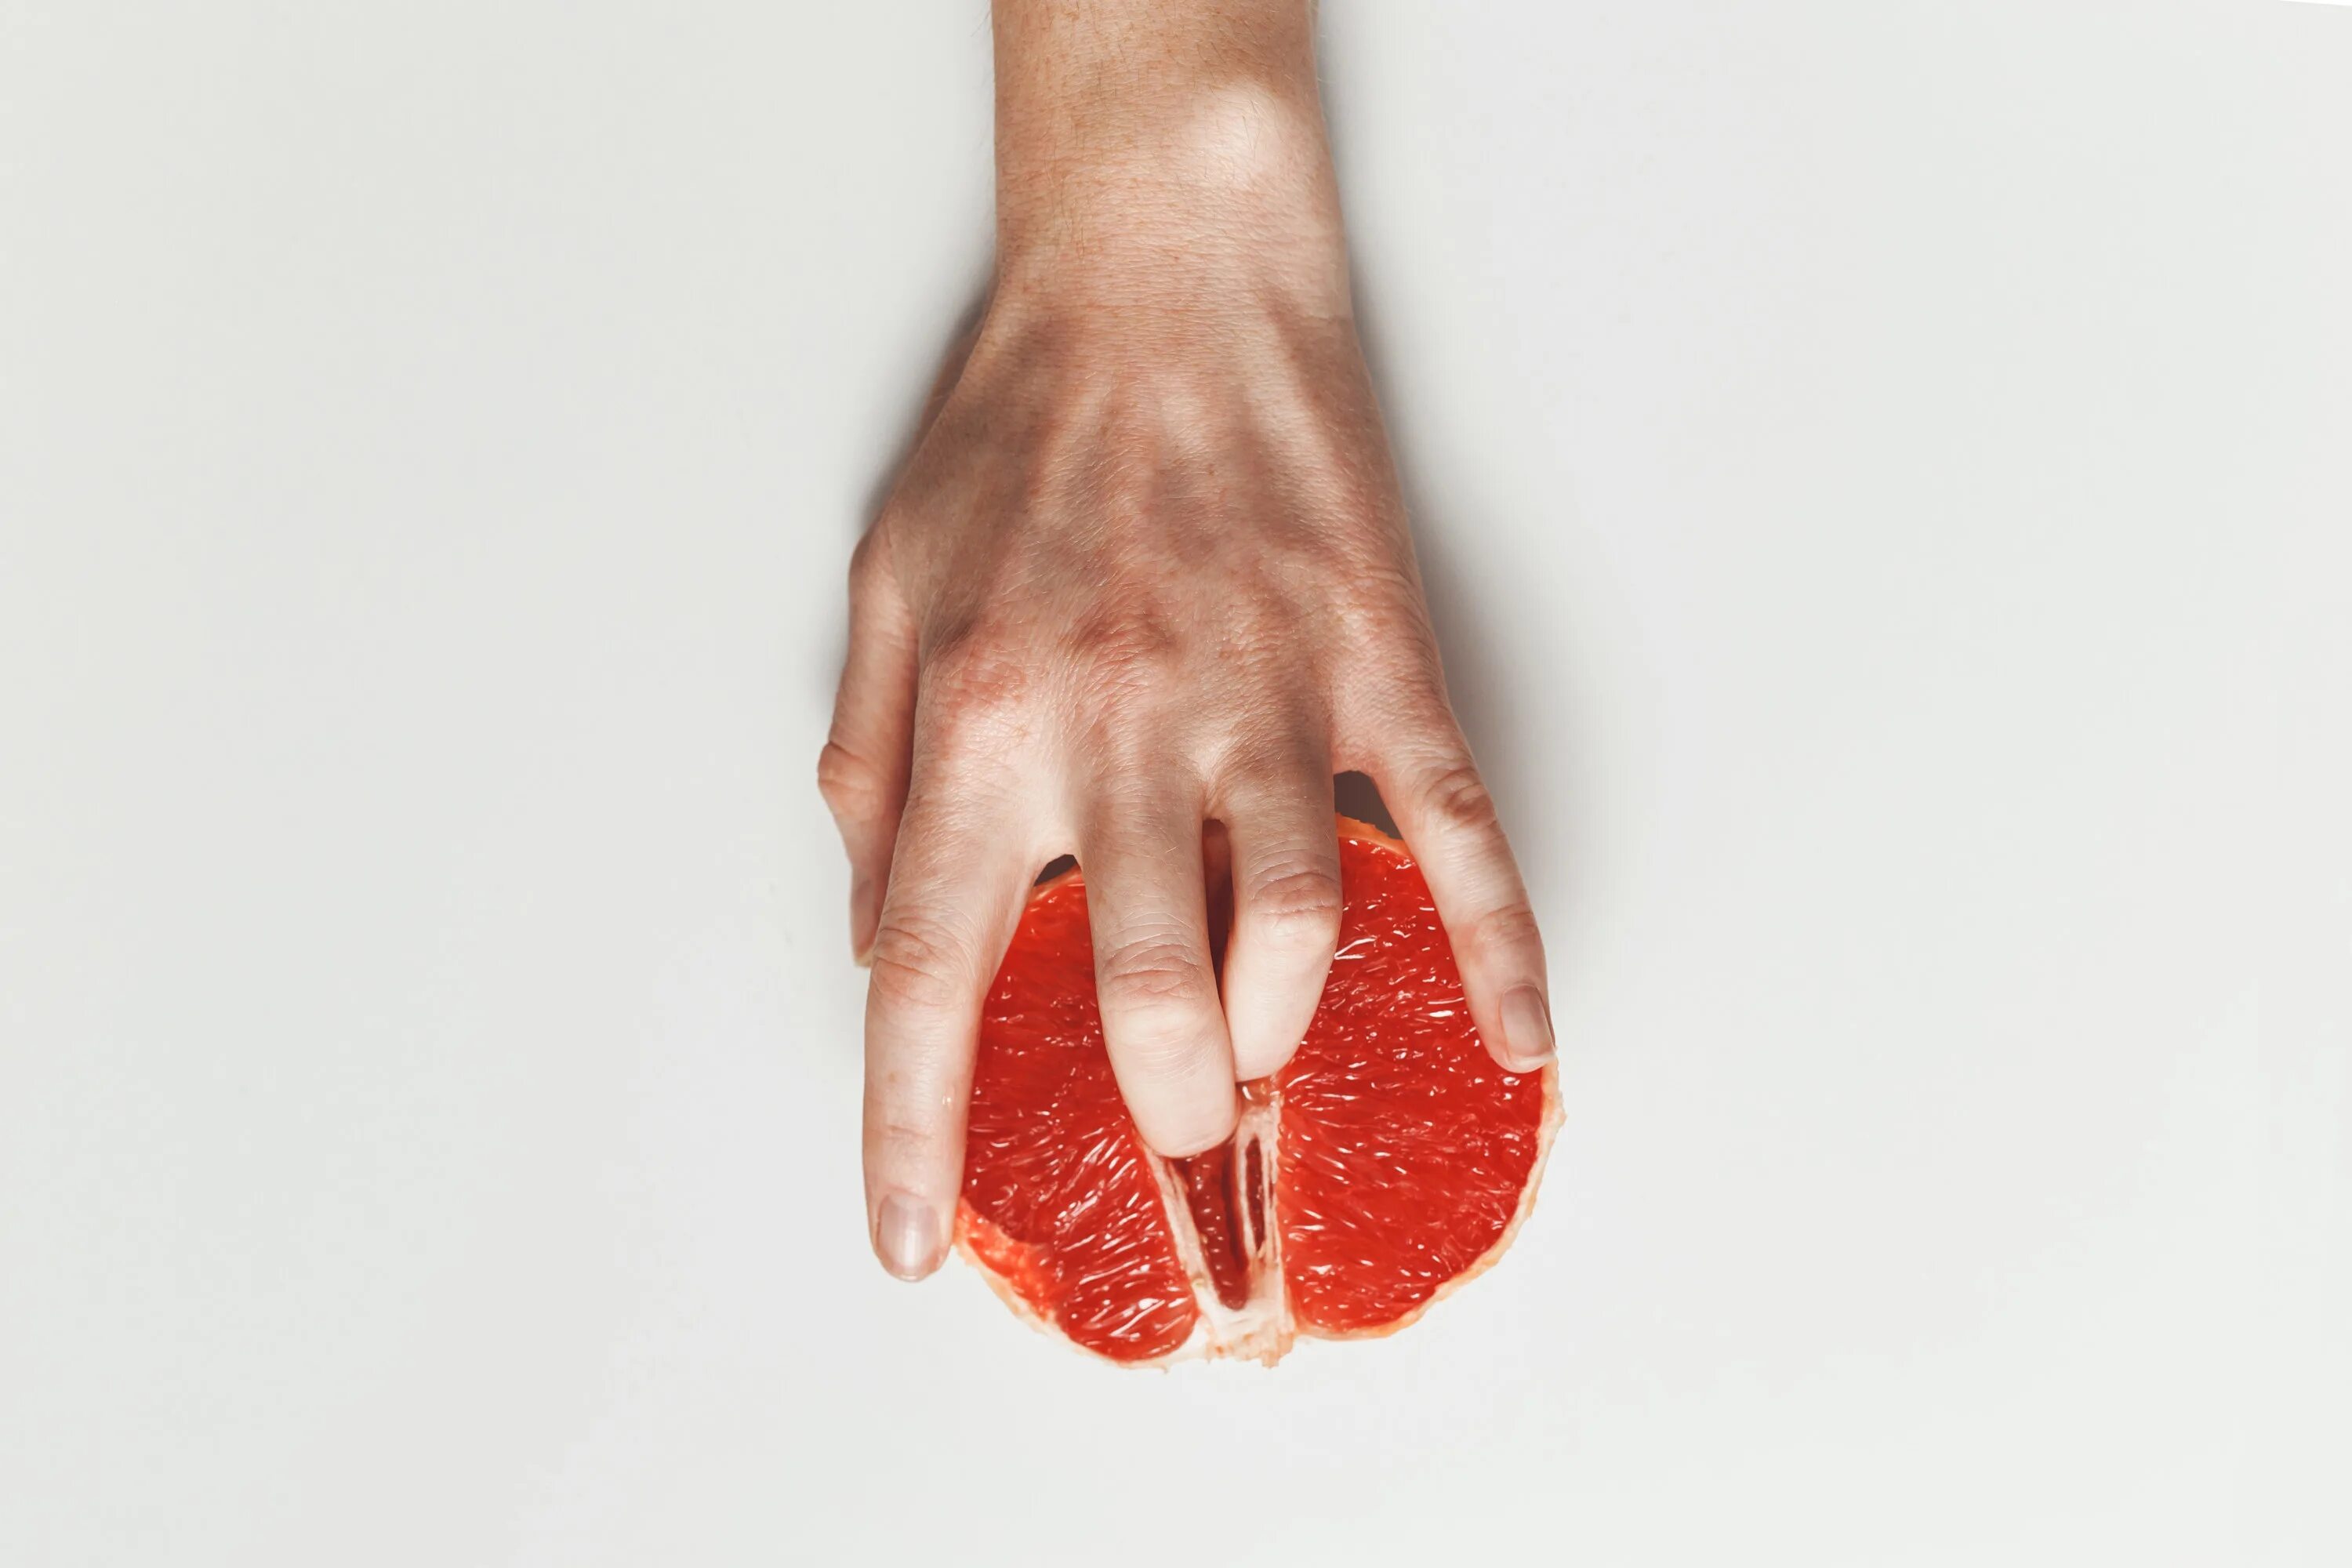 Пальцы в грейпфруте. Женская рука в грейпфруте. Грейпфрут в руке. Женские пальцы в грейпфруте. Удовольствие пальчиками